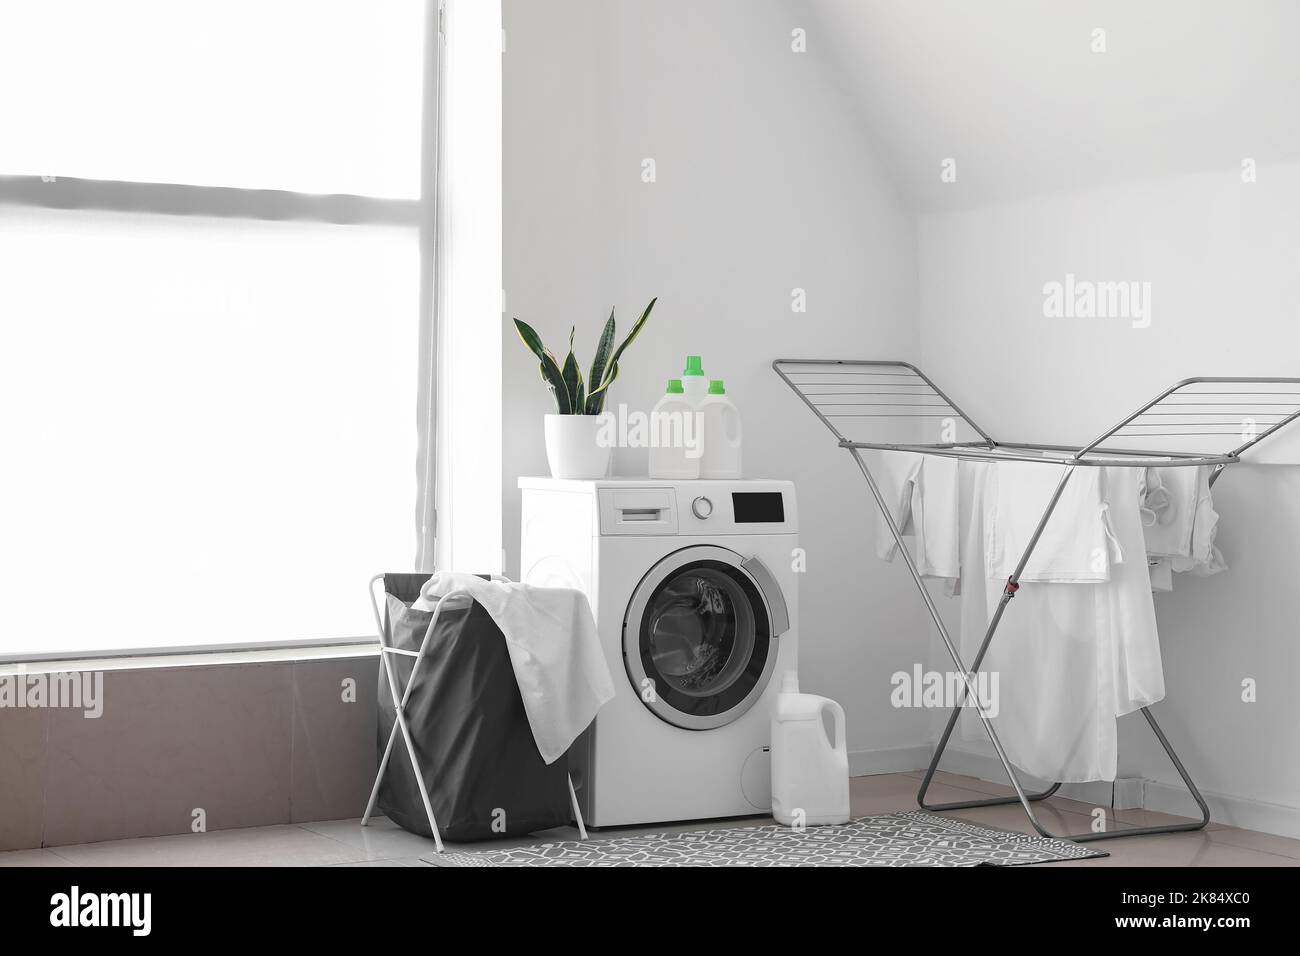 Innenraum des hellen Waschraums mit Waschmaschine, Korb und Trockner  Stockfotografie - Alamy